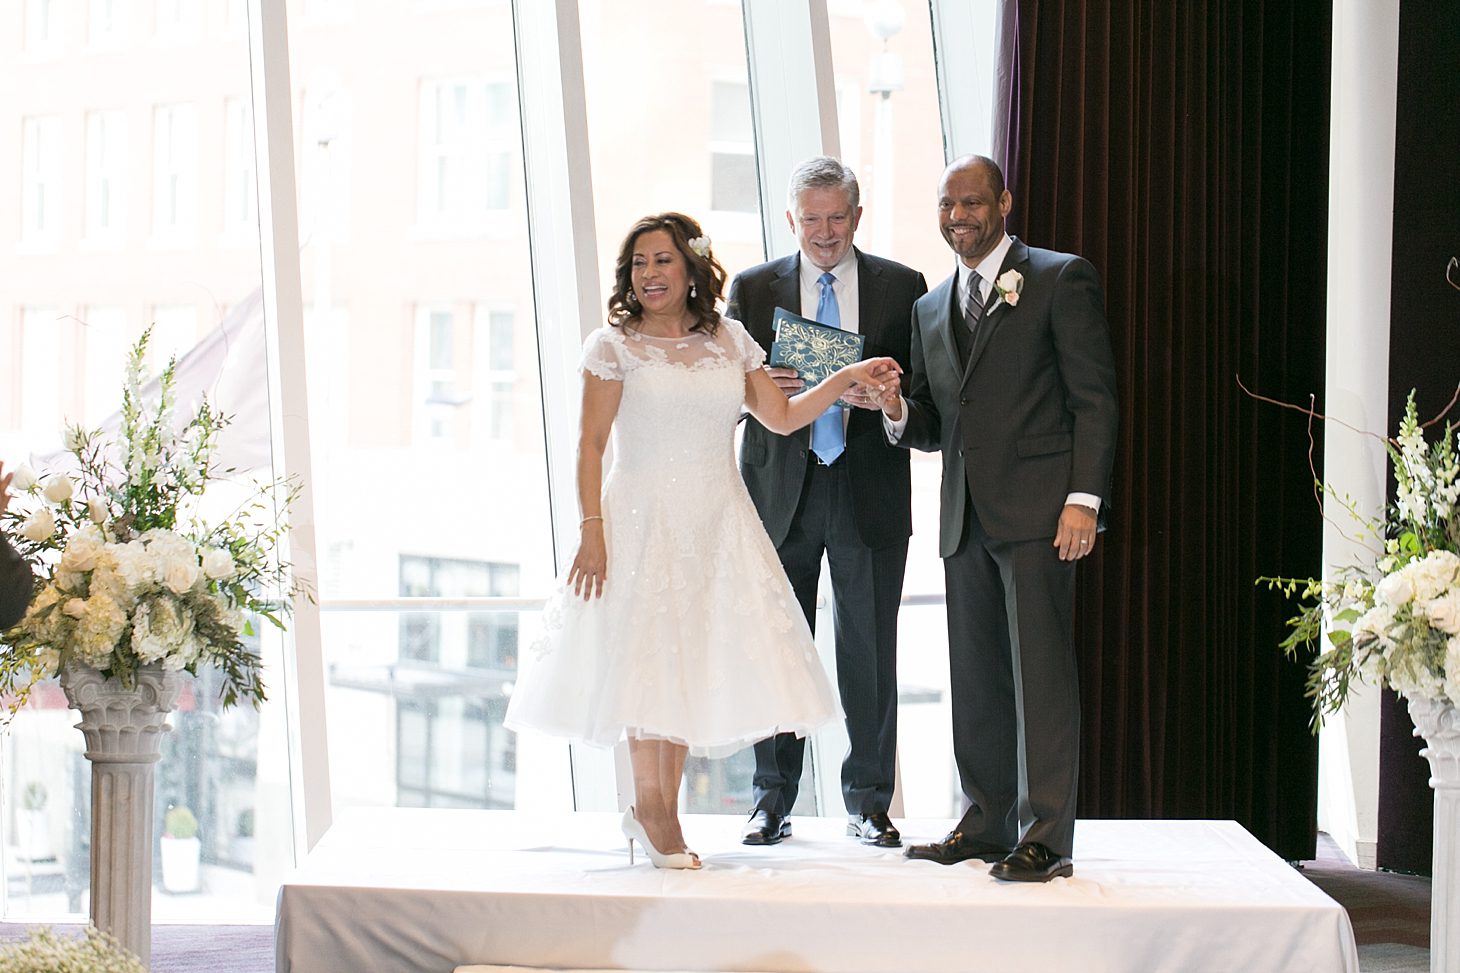 Sofitel Wedding Chicago by Christy Tyler Photography_0026